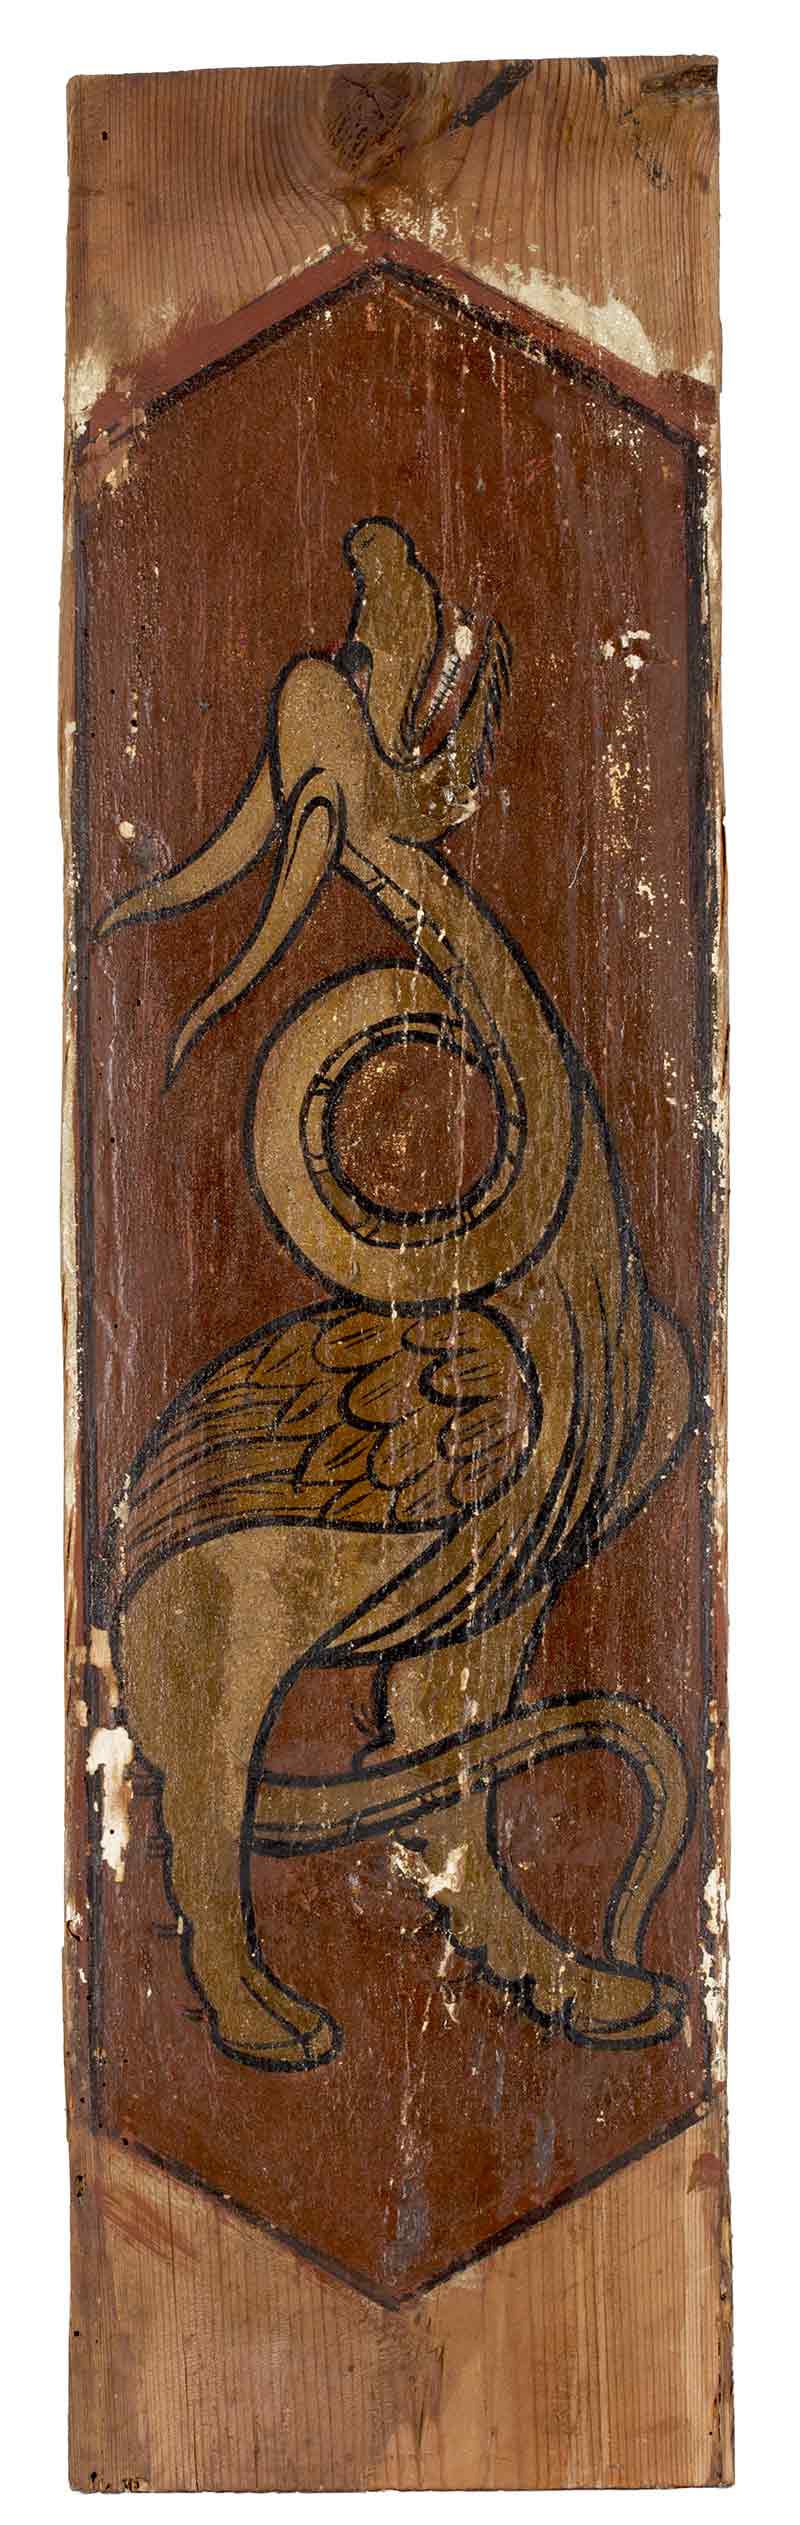 Arrocabe mudejar de madera de pino pintado decorado con un dragón, ffs. del S. XV. Medidas: 83 x